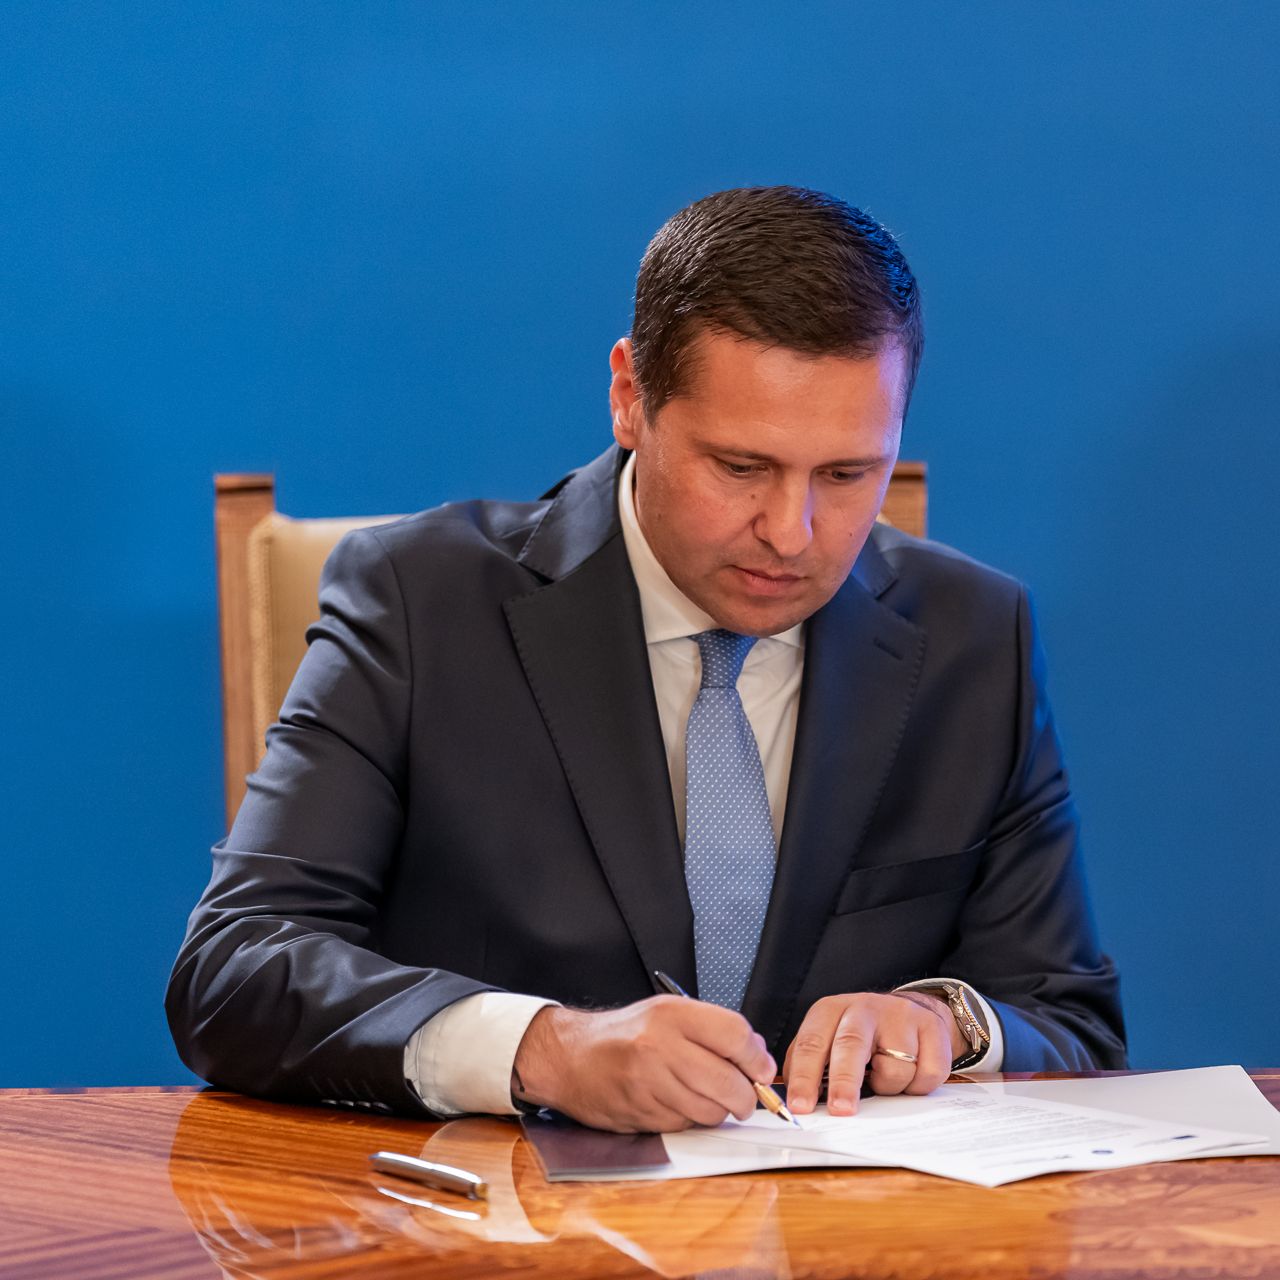 Președintele Corneliu Ștefan a semnat contractul pentru digitalizarea Consiliului Județean Dâmbovița. Persoanele fizice și juridice vor putea obține documente fără cozi la ghișee sau timp pierdut cu birocrația